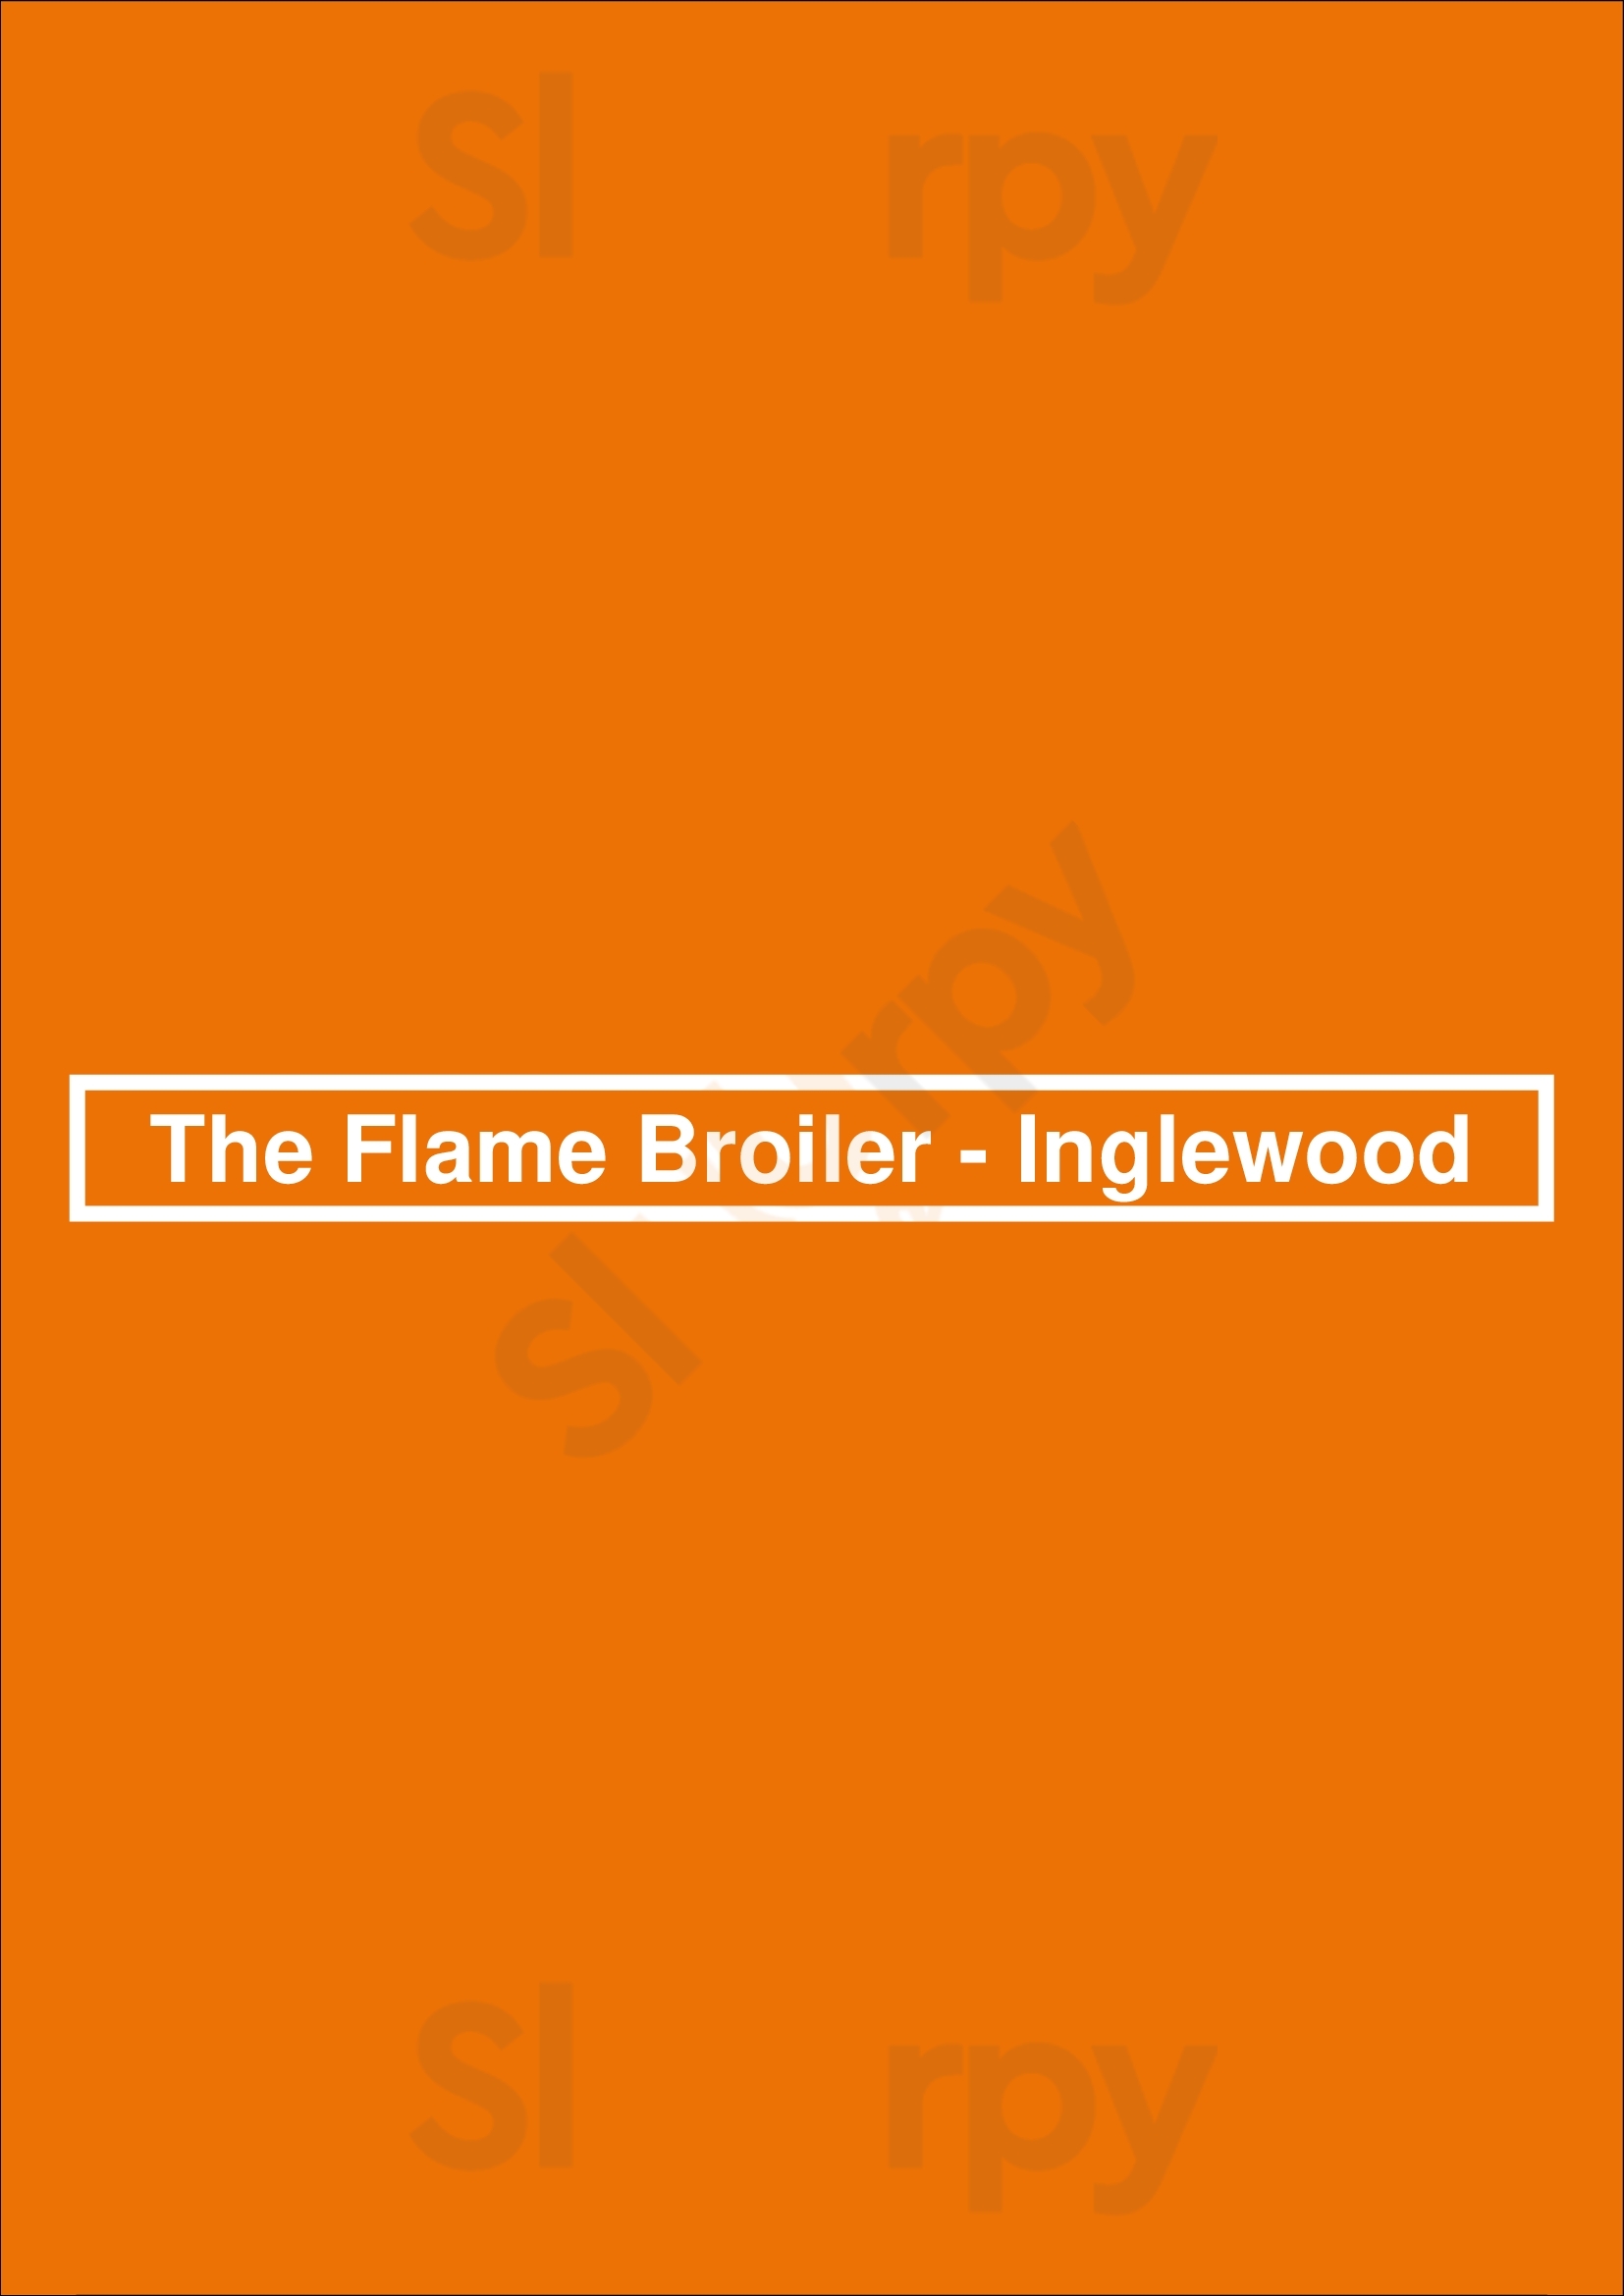 The Flame Broiler - Inglewood Inglewood Menu - 1